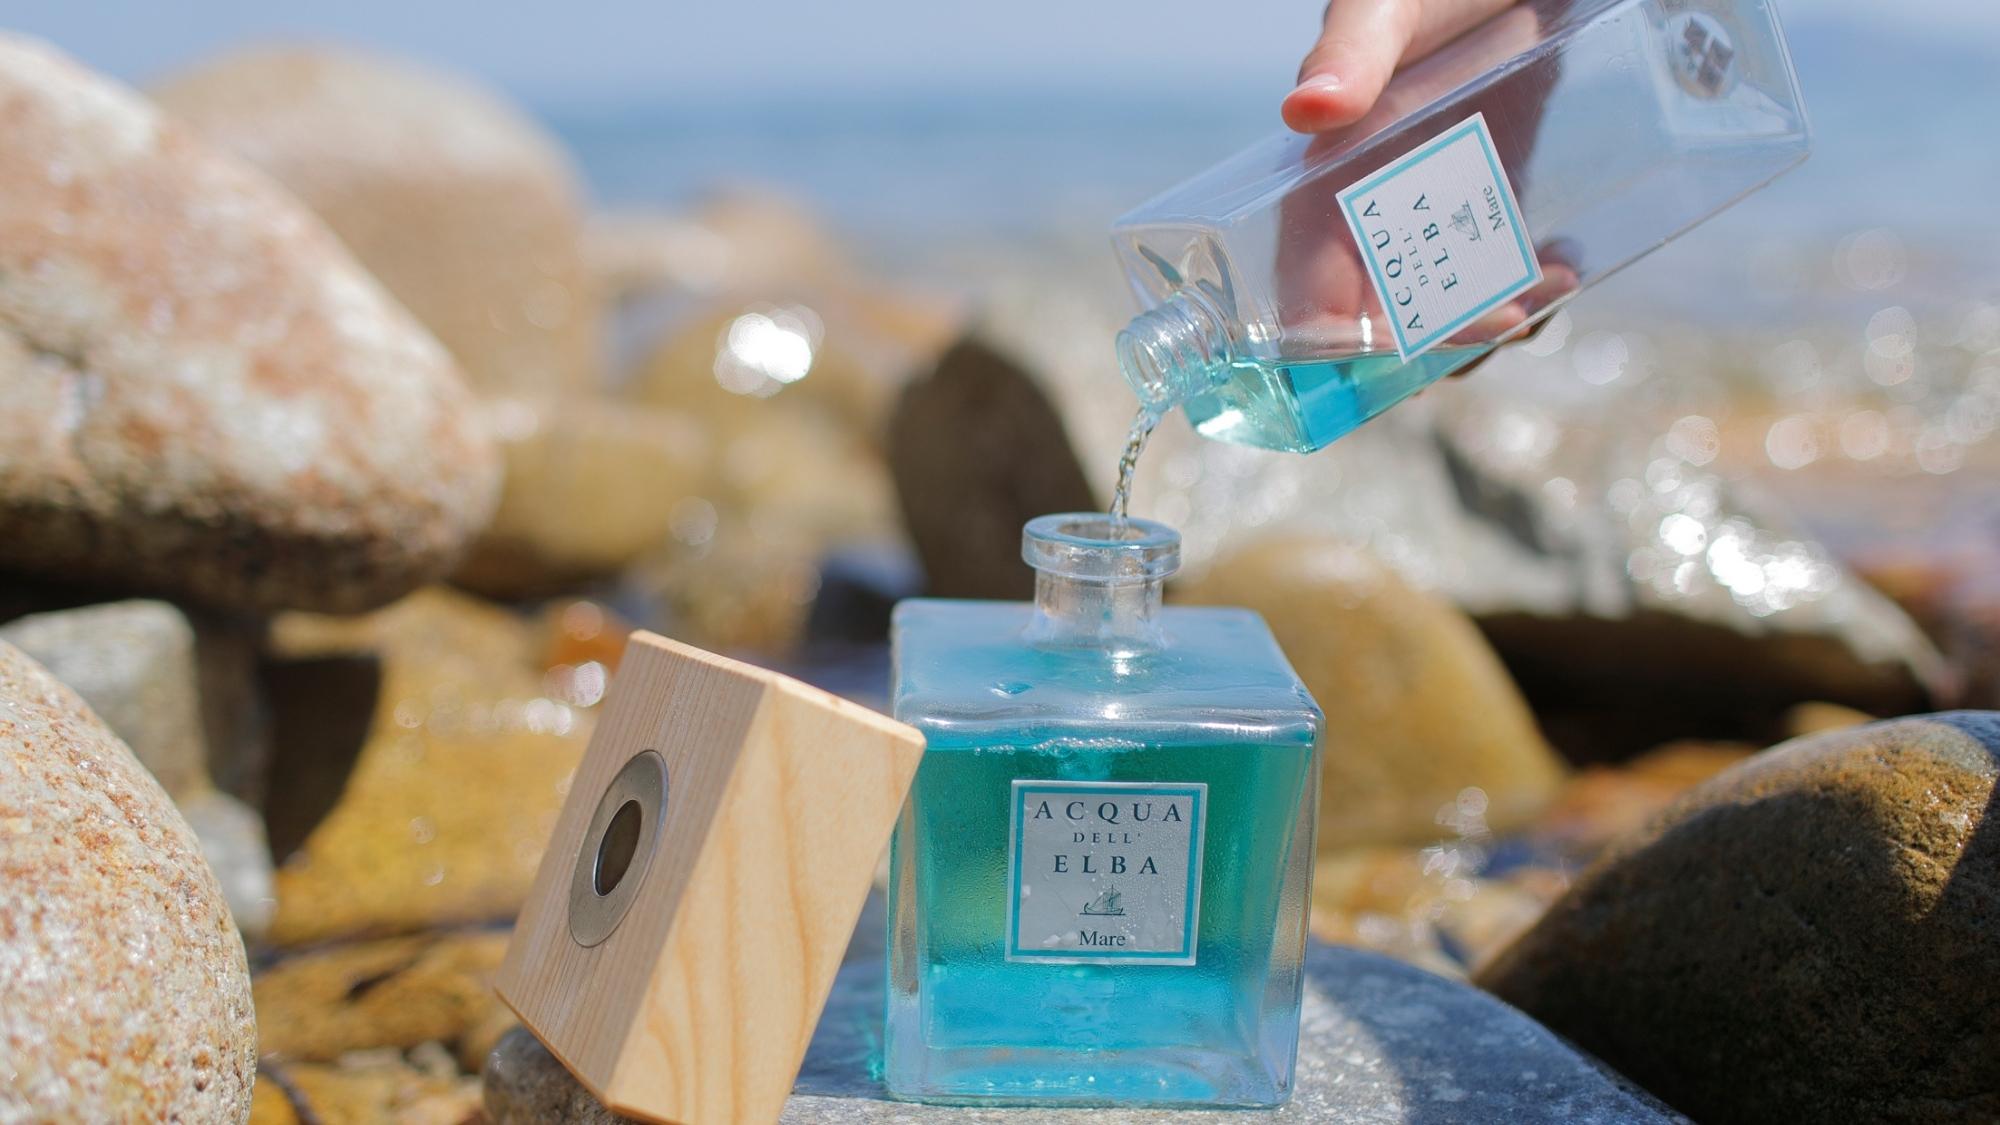 Home Fragrance Diffuser Refills from Acqua dell'Elba – Acqua dell'Elba US